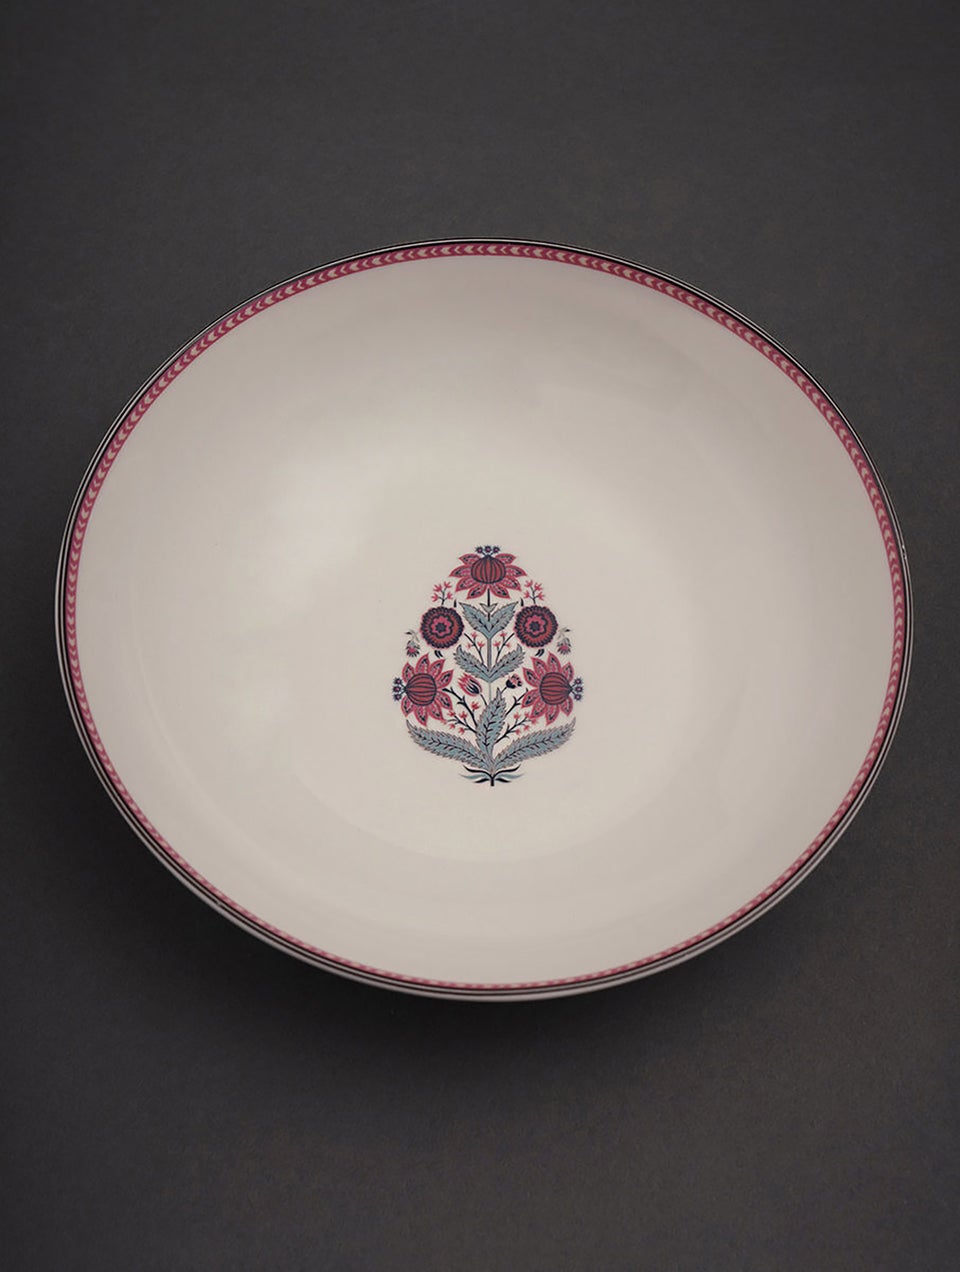 Mughal Inspired Porcelain Serving Bowl